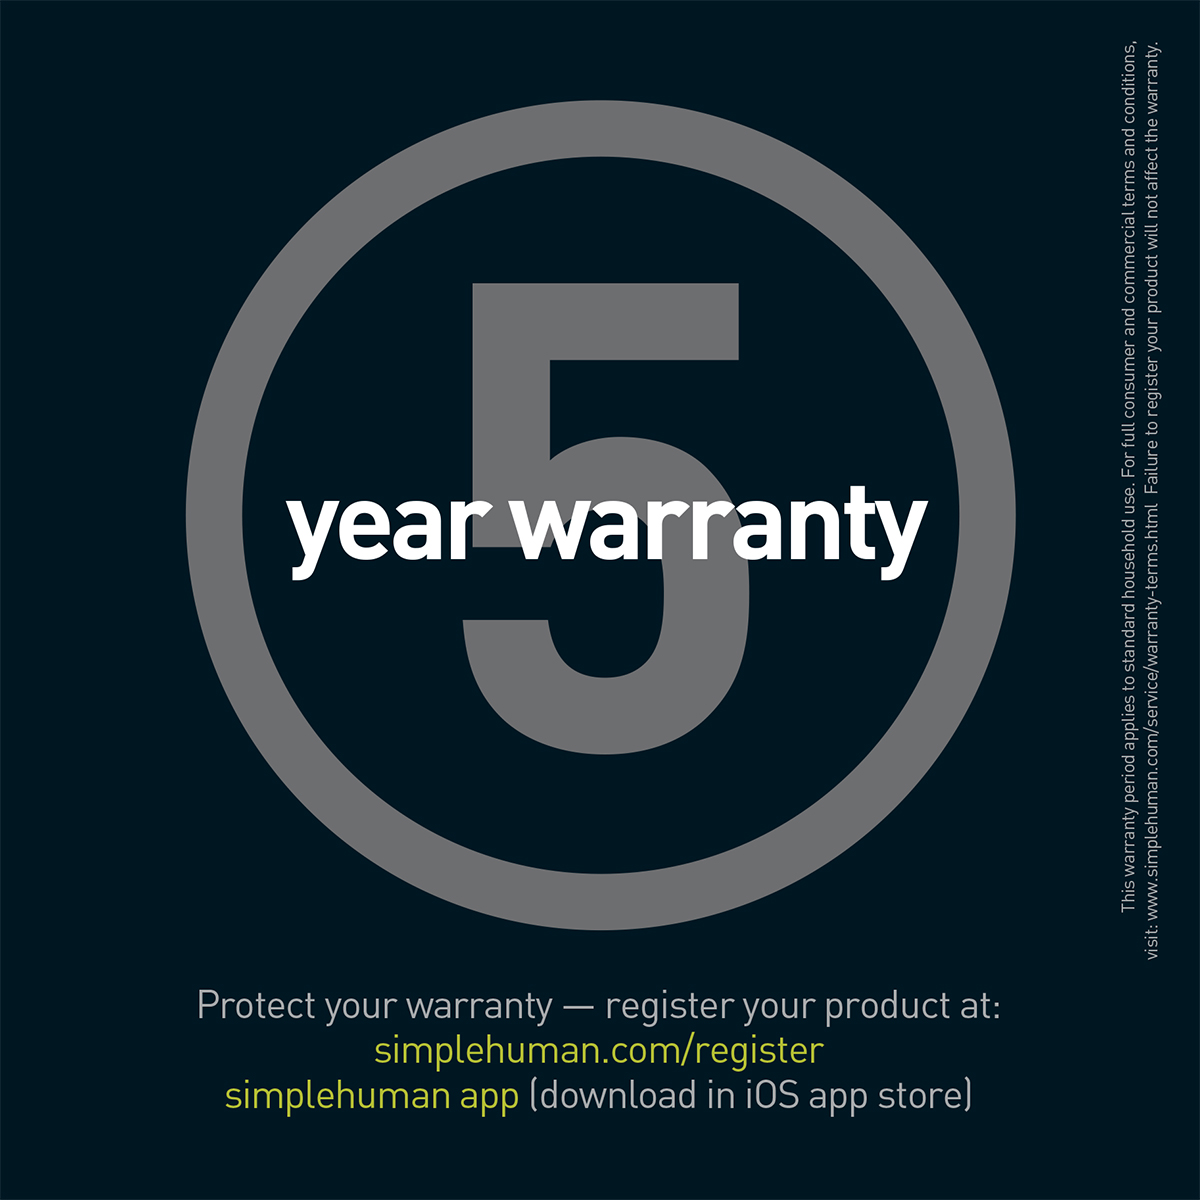 How do I file a warranty claim? – simplehuman